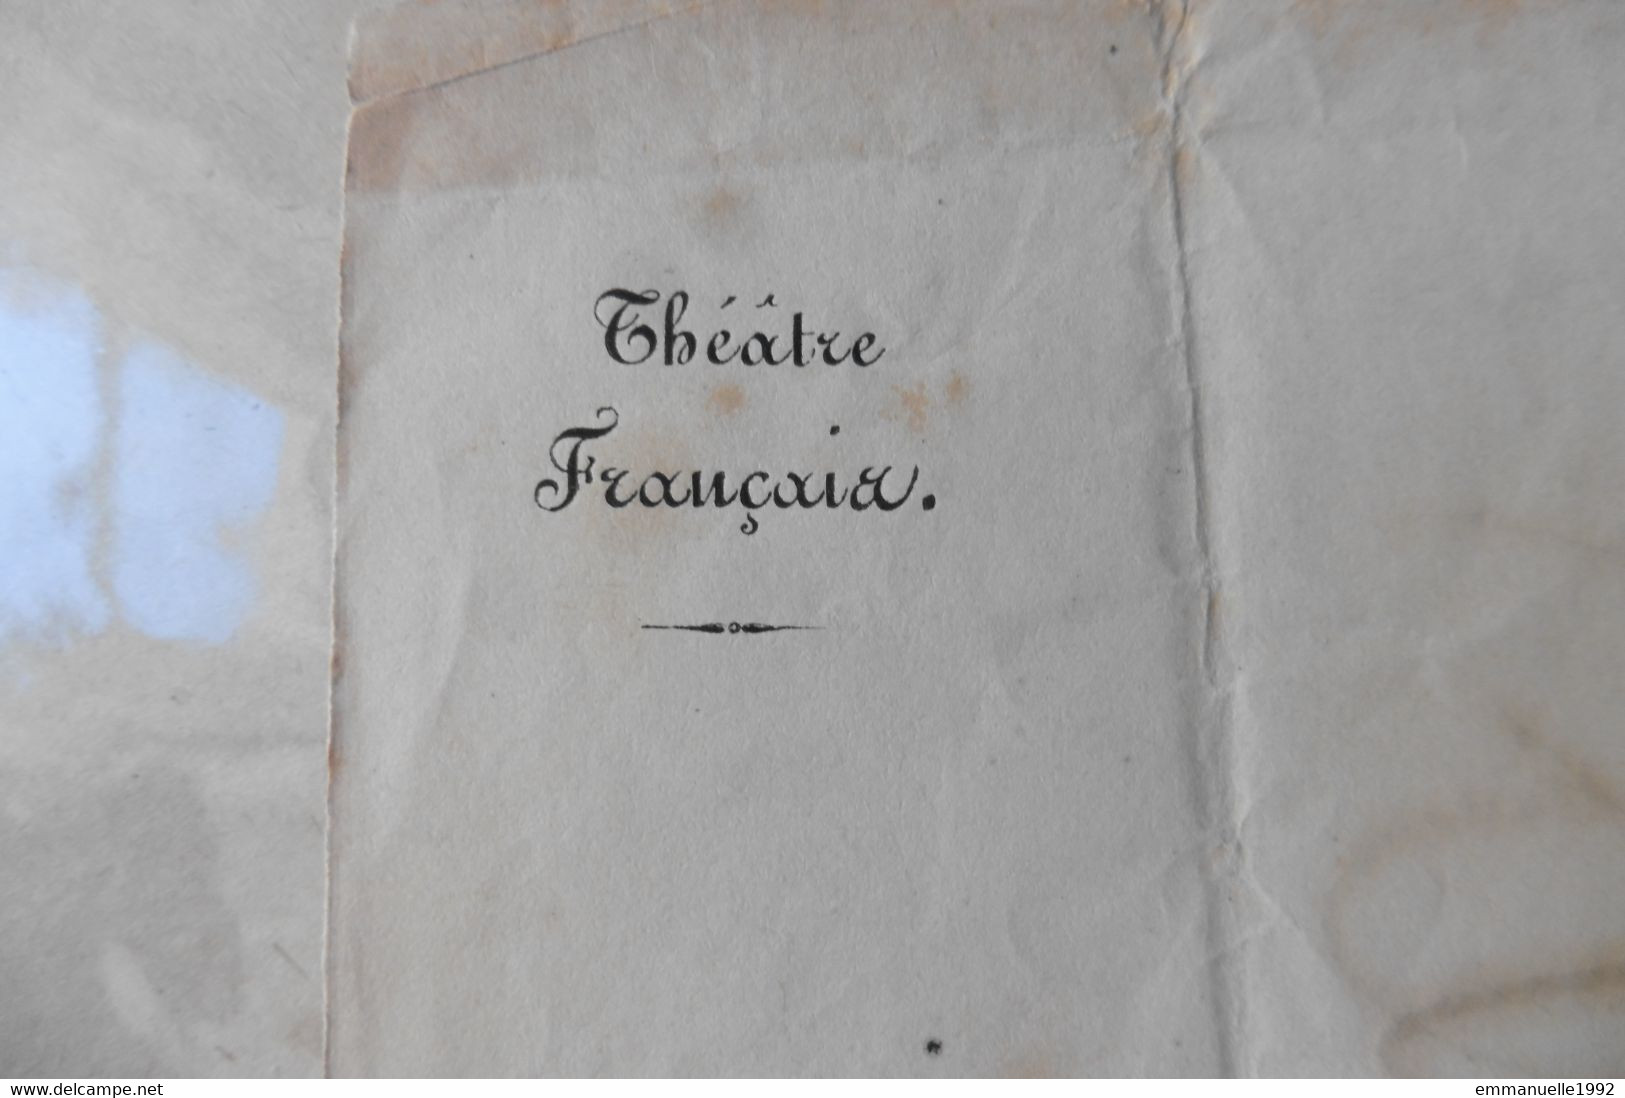 Lettre Autographe de Mocquard secrétaire de Napoléon III à Arsène Houssaye Second Empire